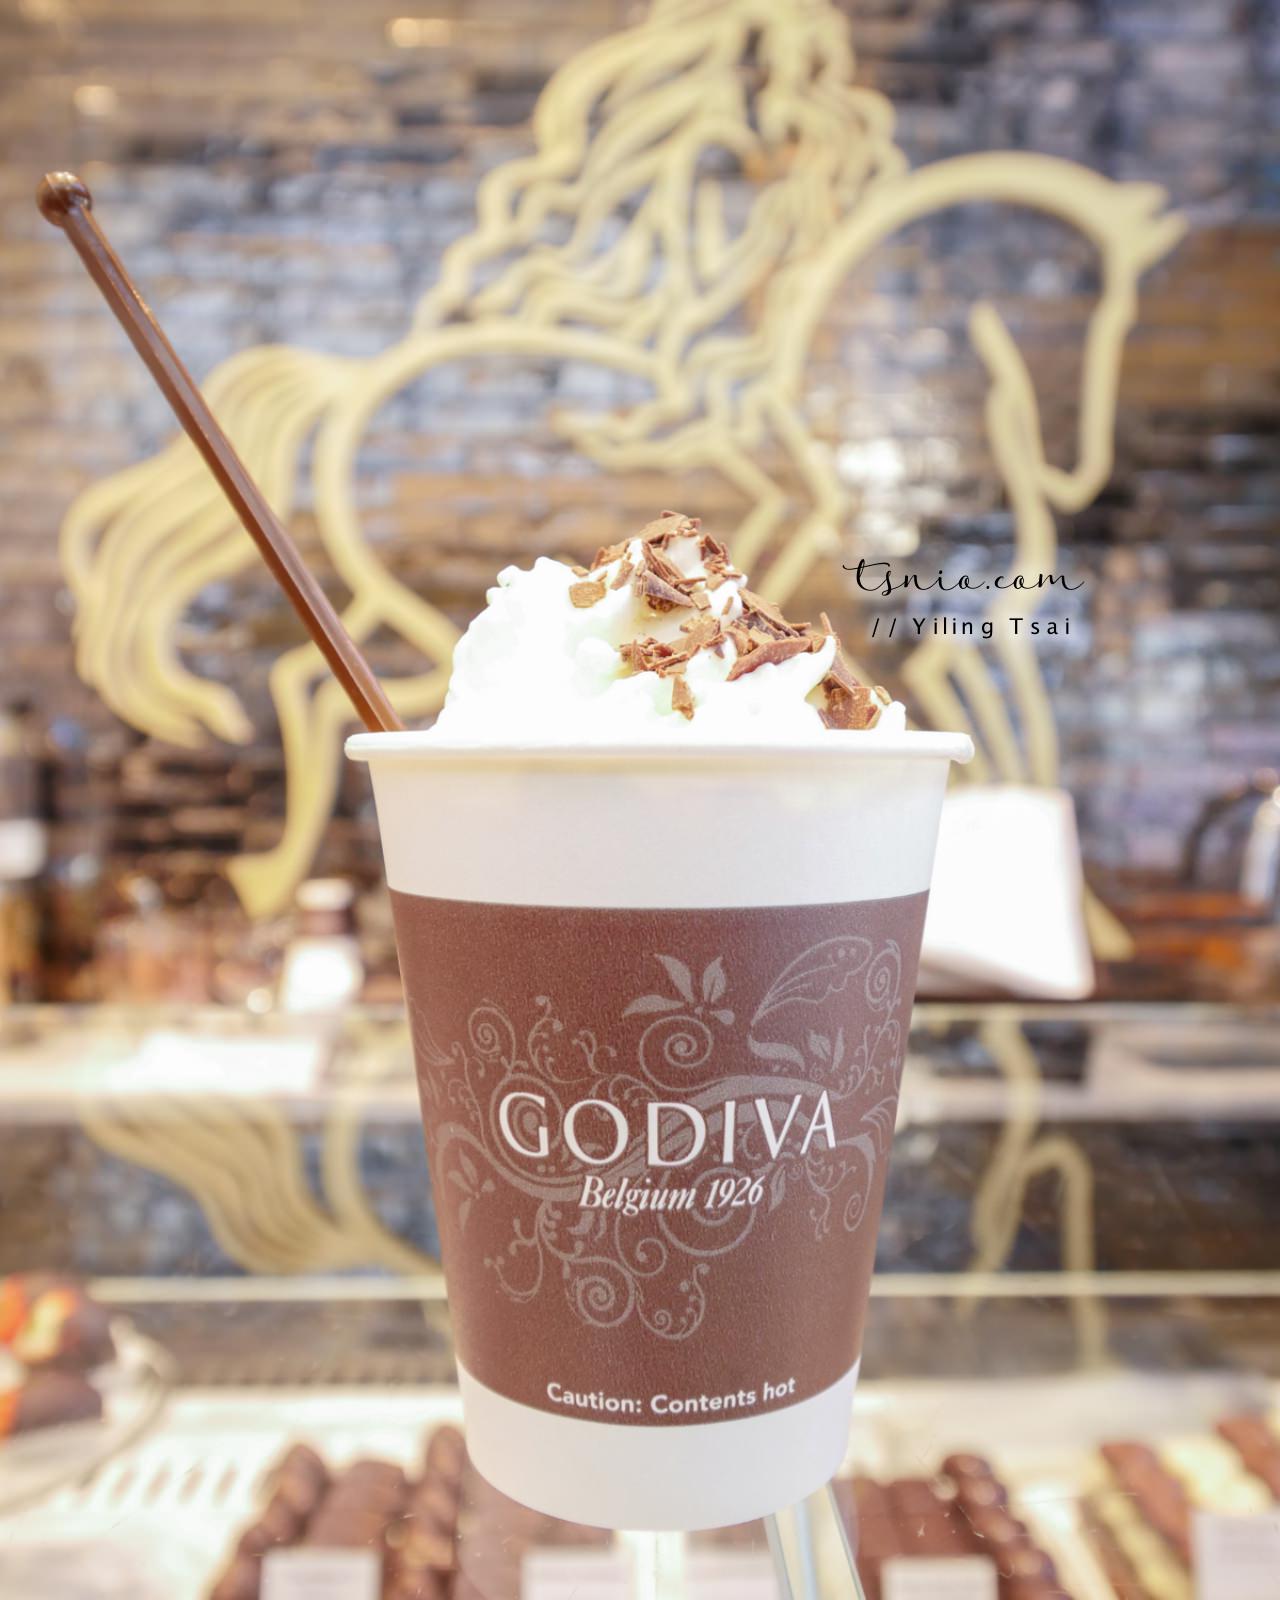 比利時巧克力 Godiva 全球知名巧克力品牌